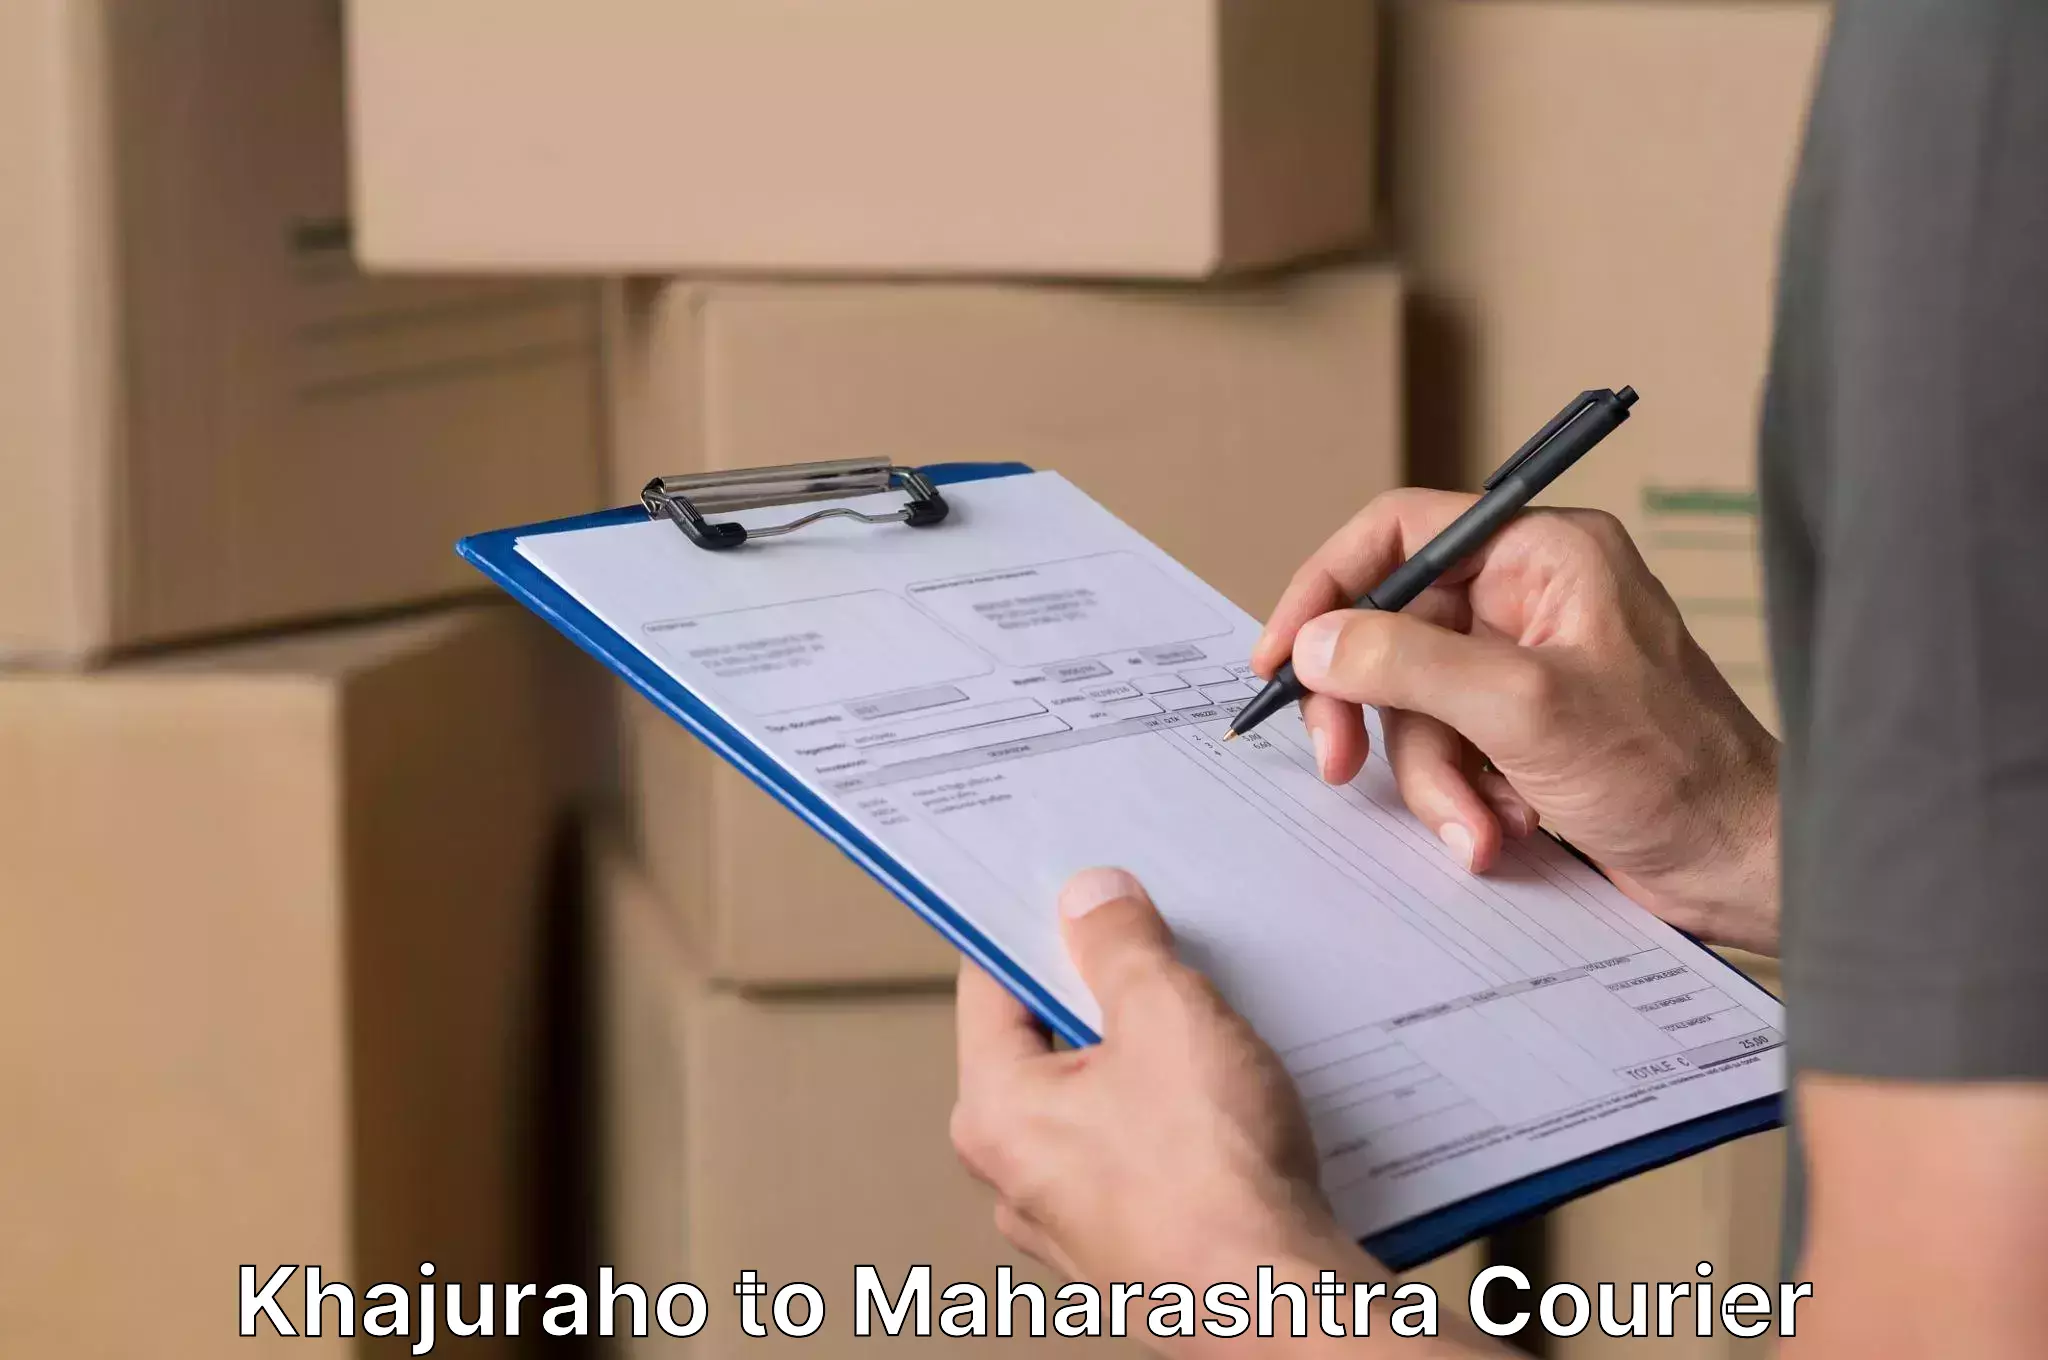 Safe household movers Khajuraho to Maharashtra